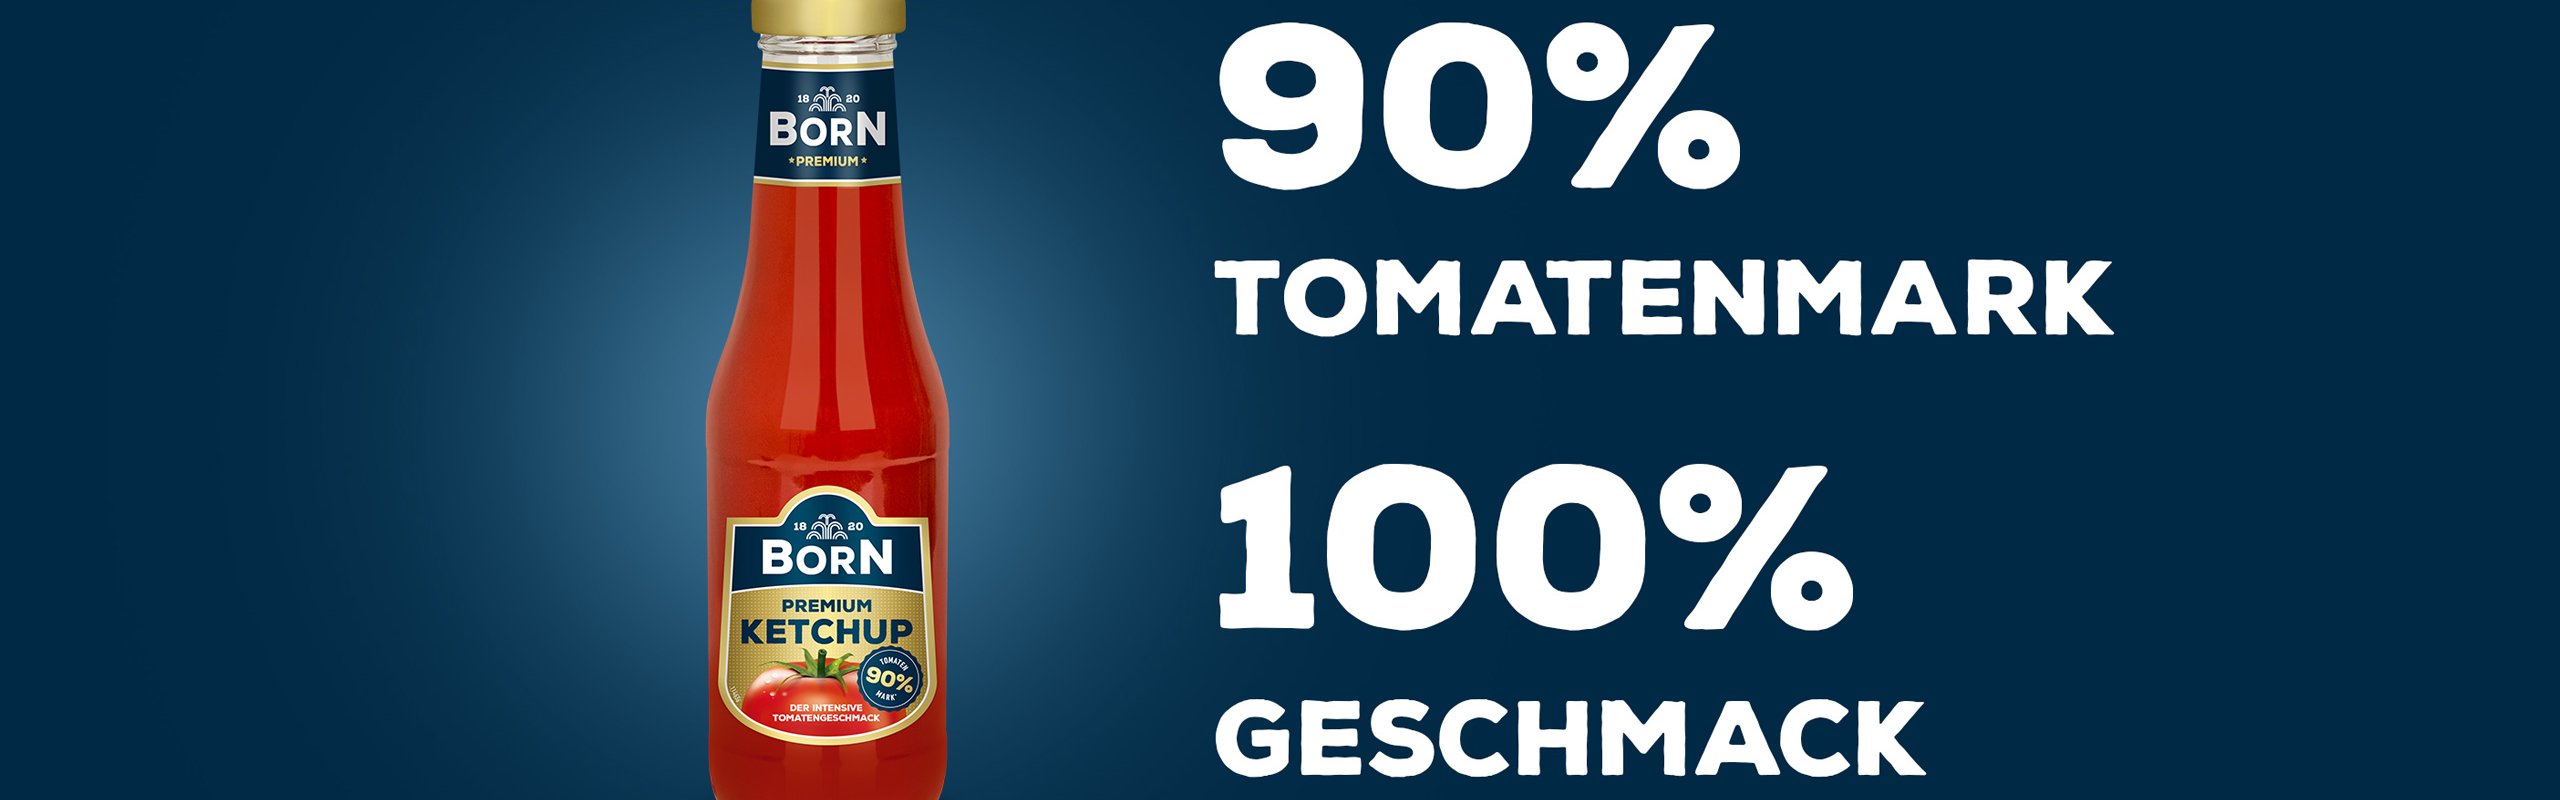 BORN Premium Ketchup in der 450ml Glasflasche. In unserer Ketchup-Flasche stecken 19 sonnengereifte Tomaten und 100% natürliche Zutaten. Fruchtig und fein gewürzt mit einem Tomatenmarkanteil von 90% und wenig Zucker. 